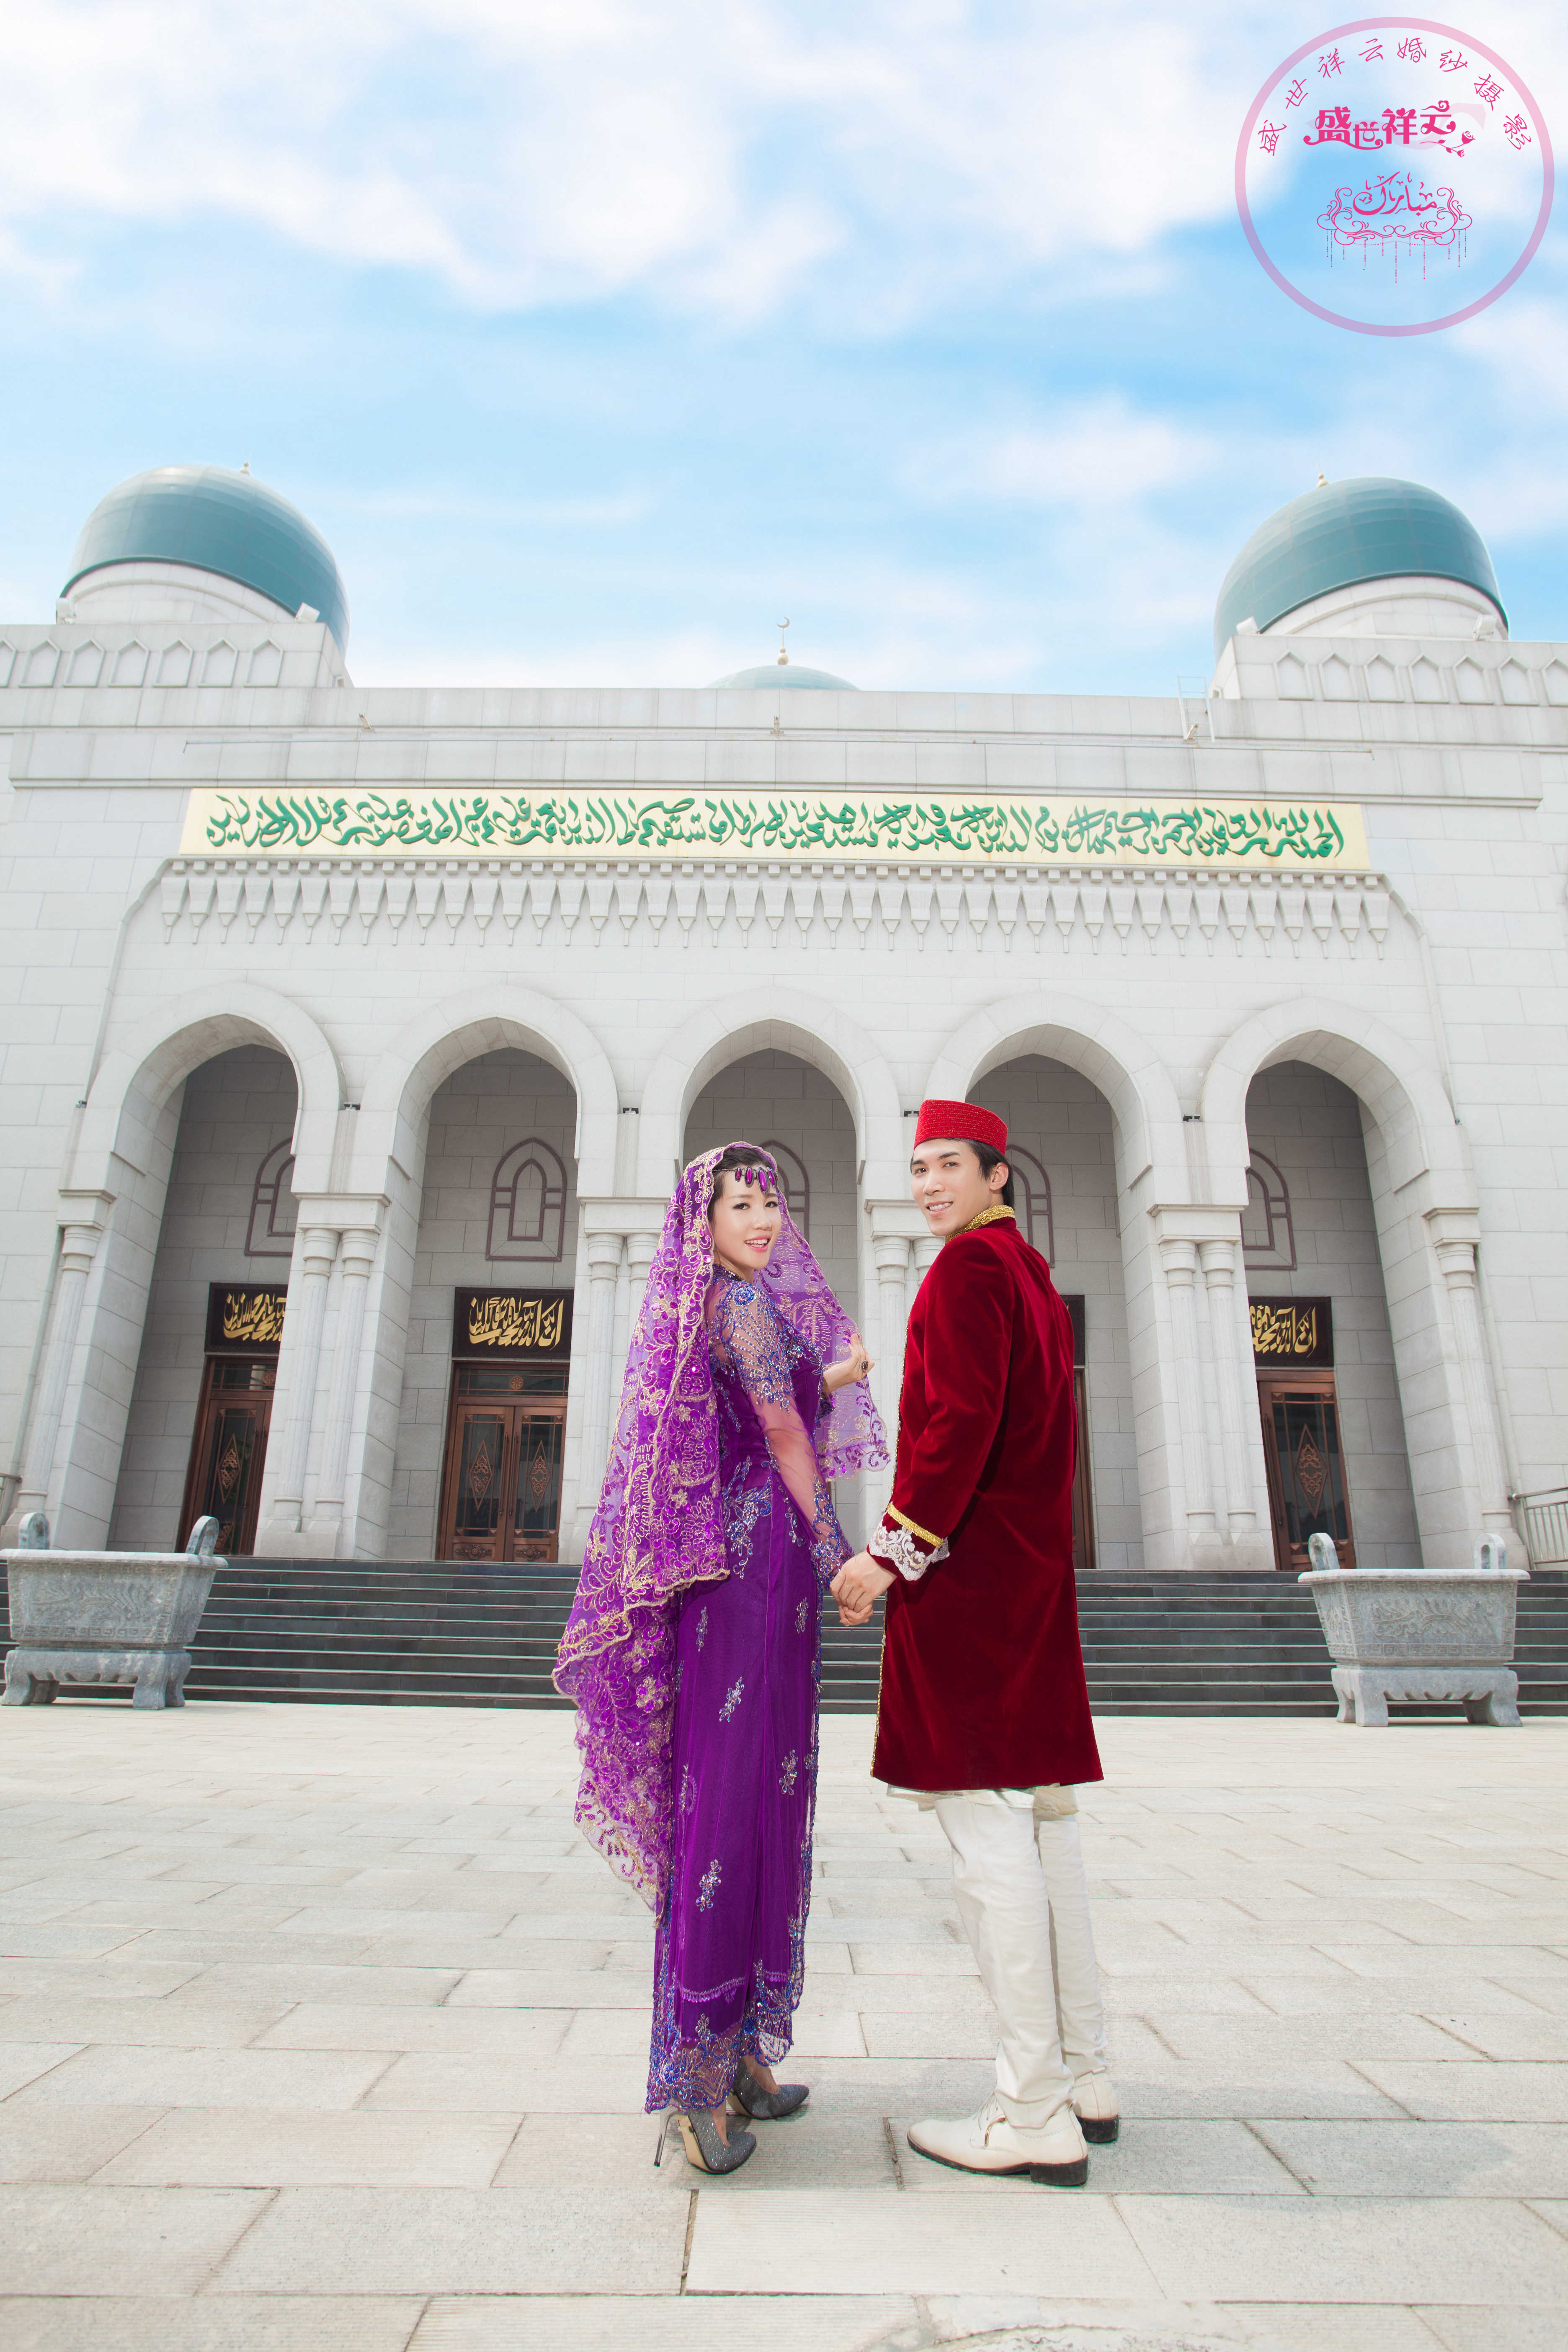 郊区单外景拍摄  穆斯林婚纱摄影  回族婚纱摄影